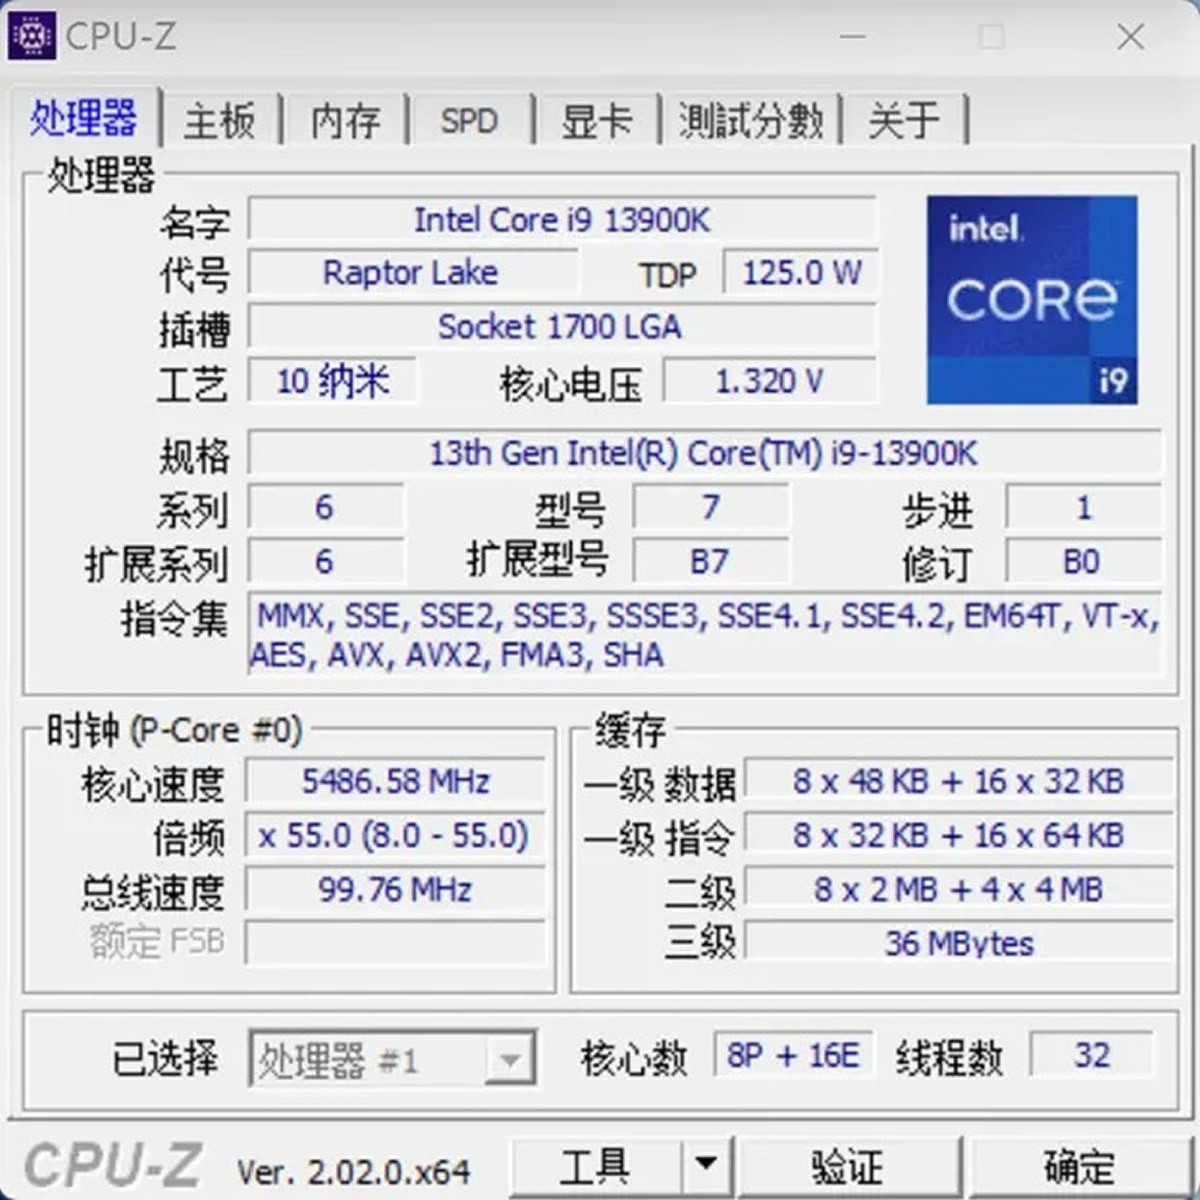 L'Intel Core i9-13900K s'offre un premier test assez complet et il est rapide